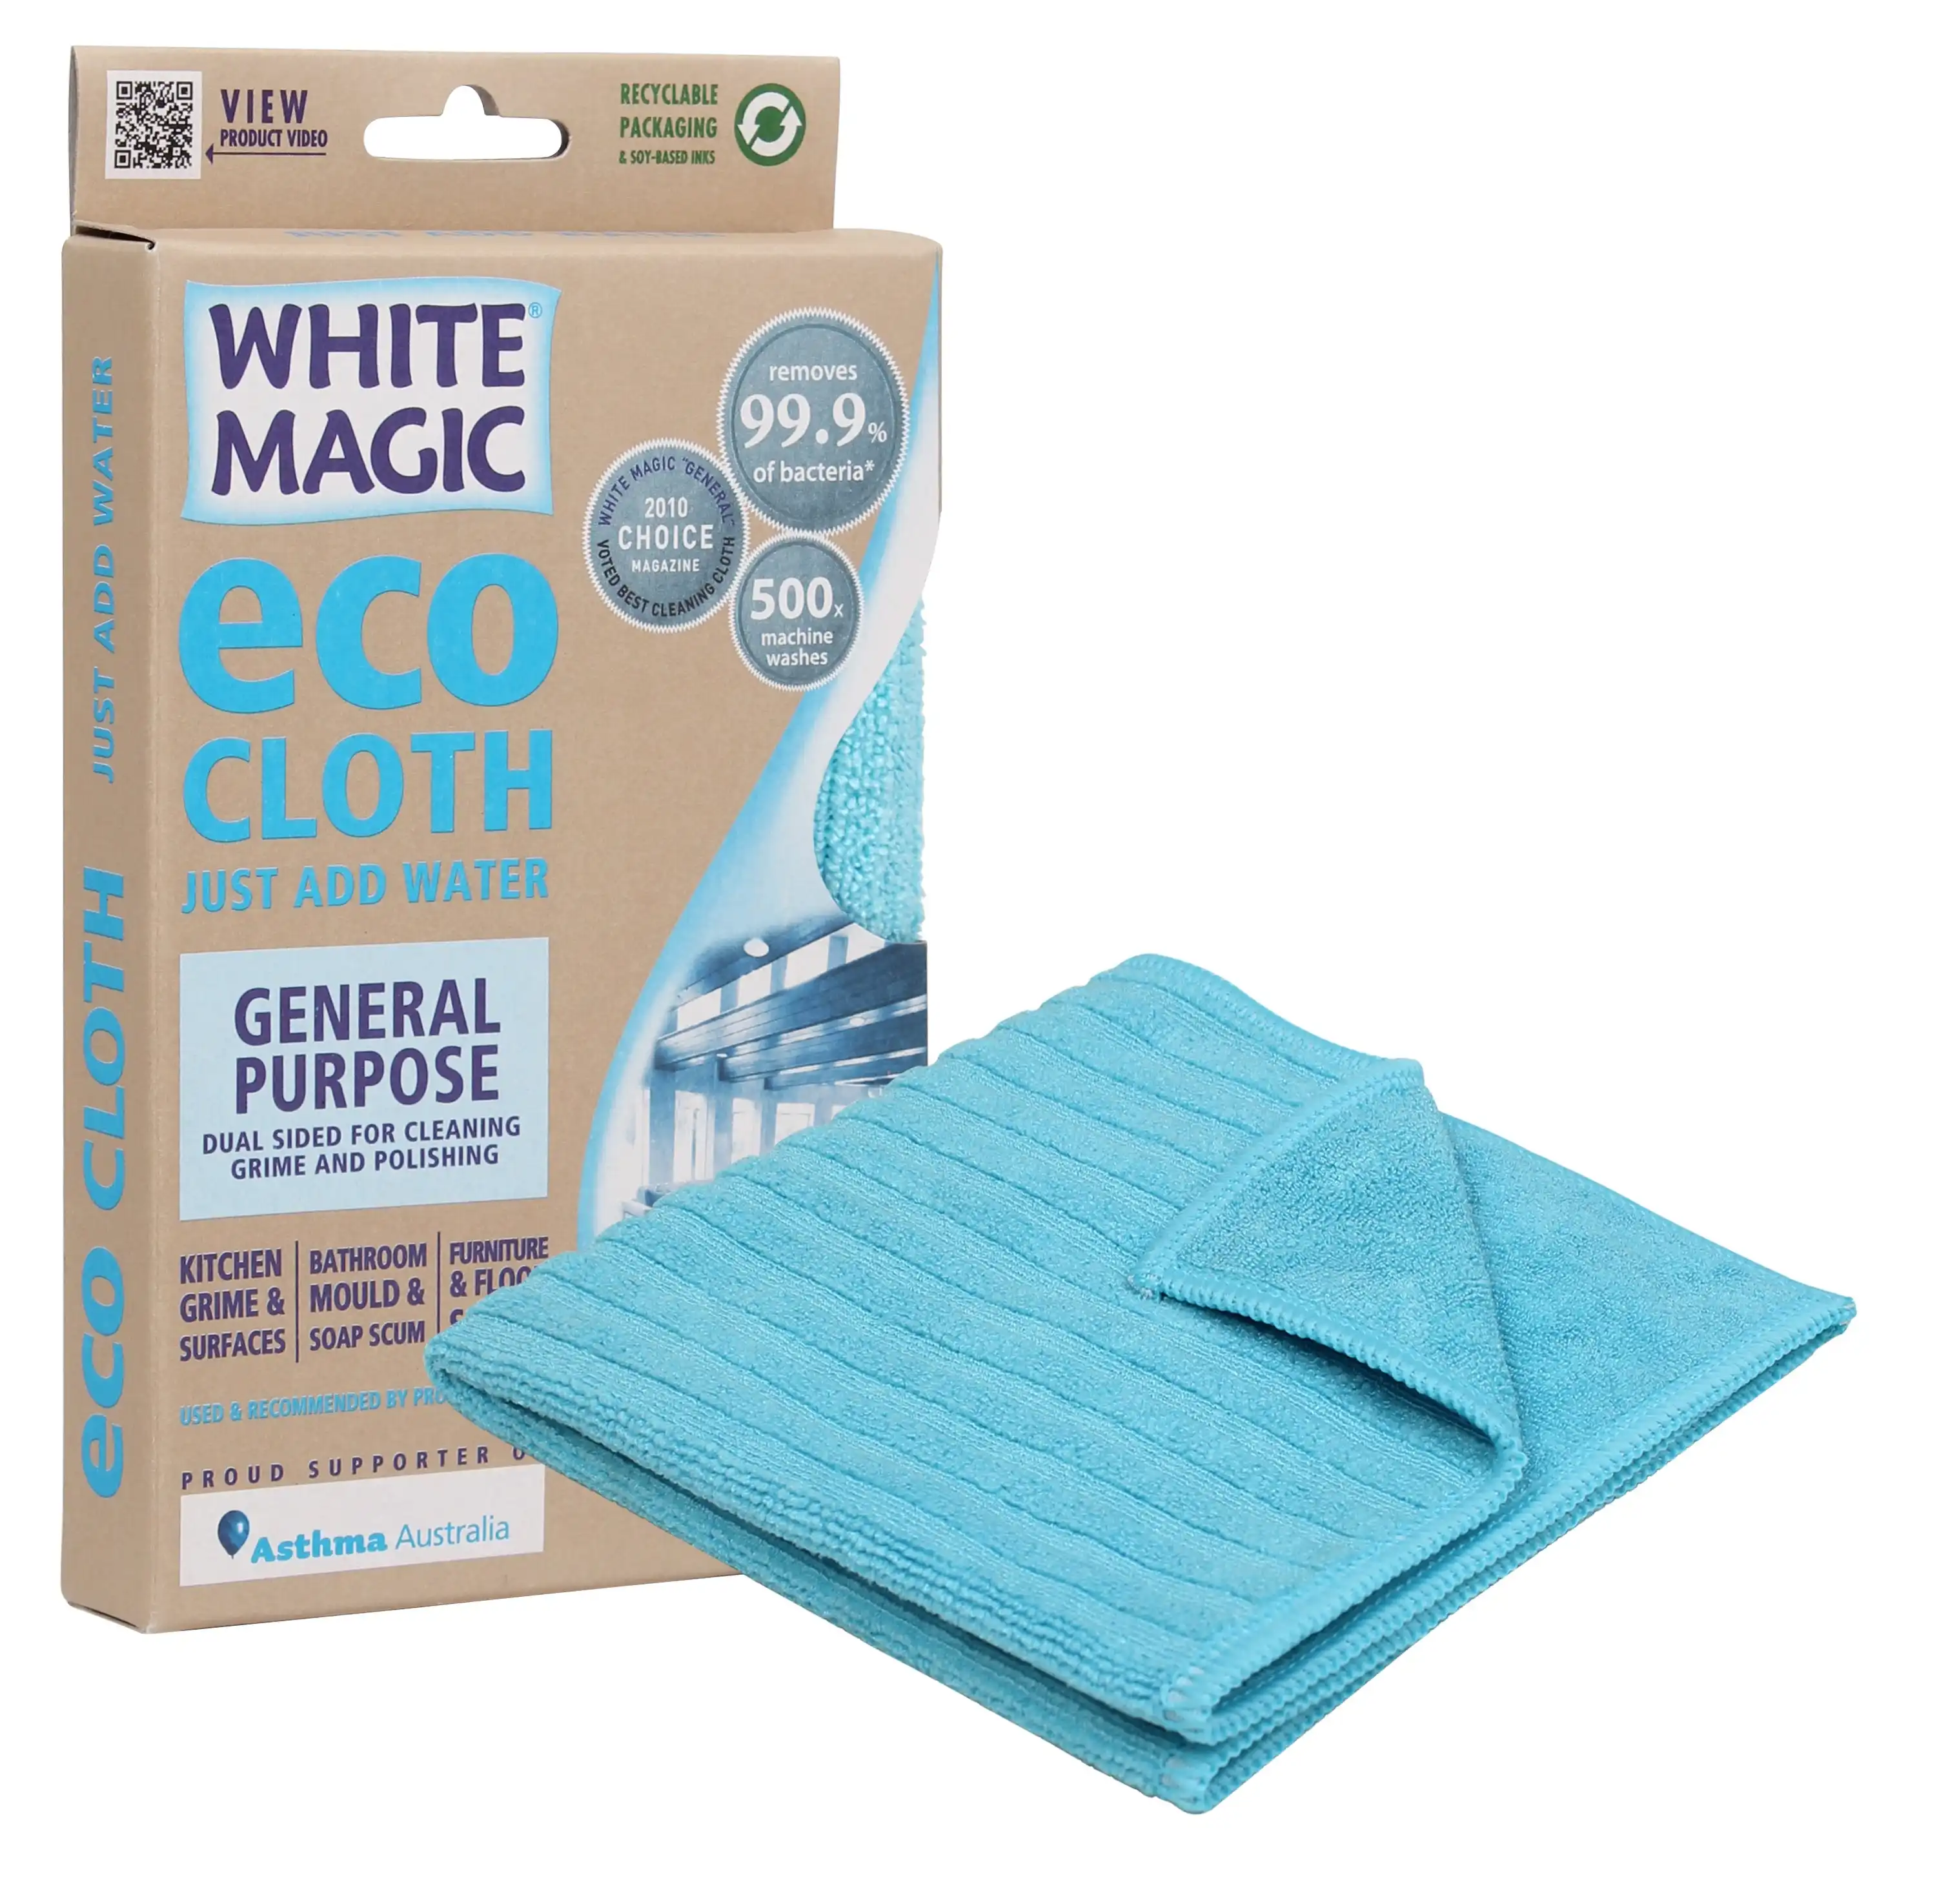 White Magic Microfibre General Purpose Eco-Cloth